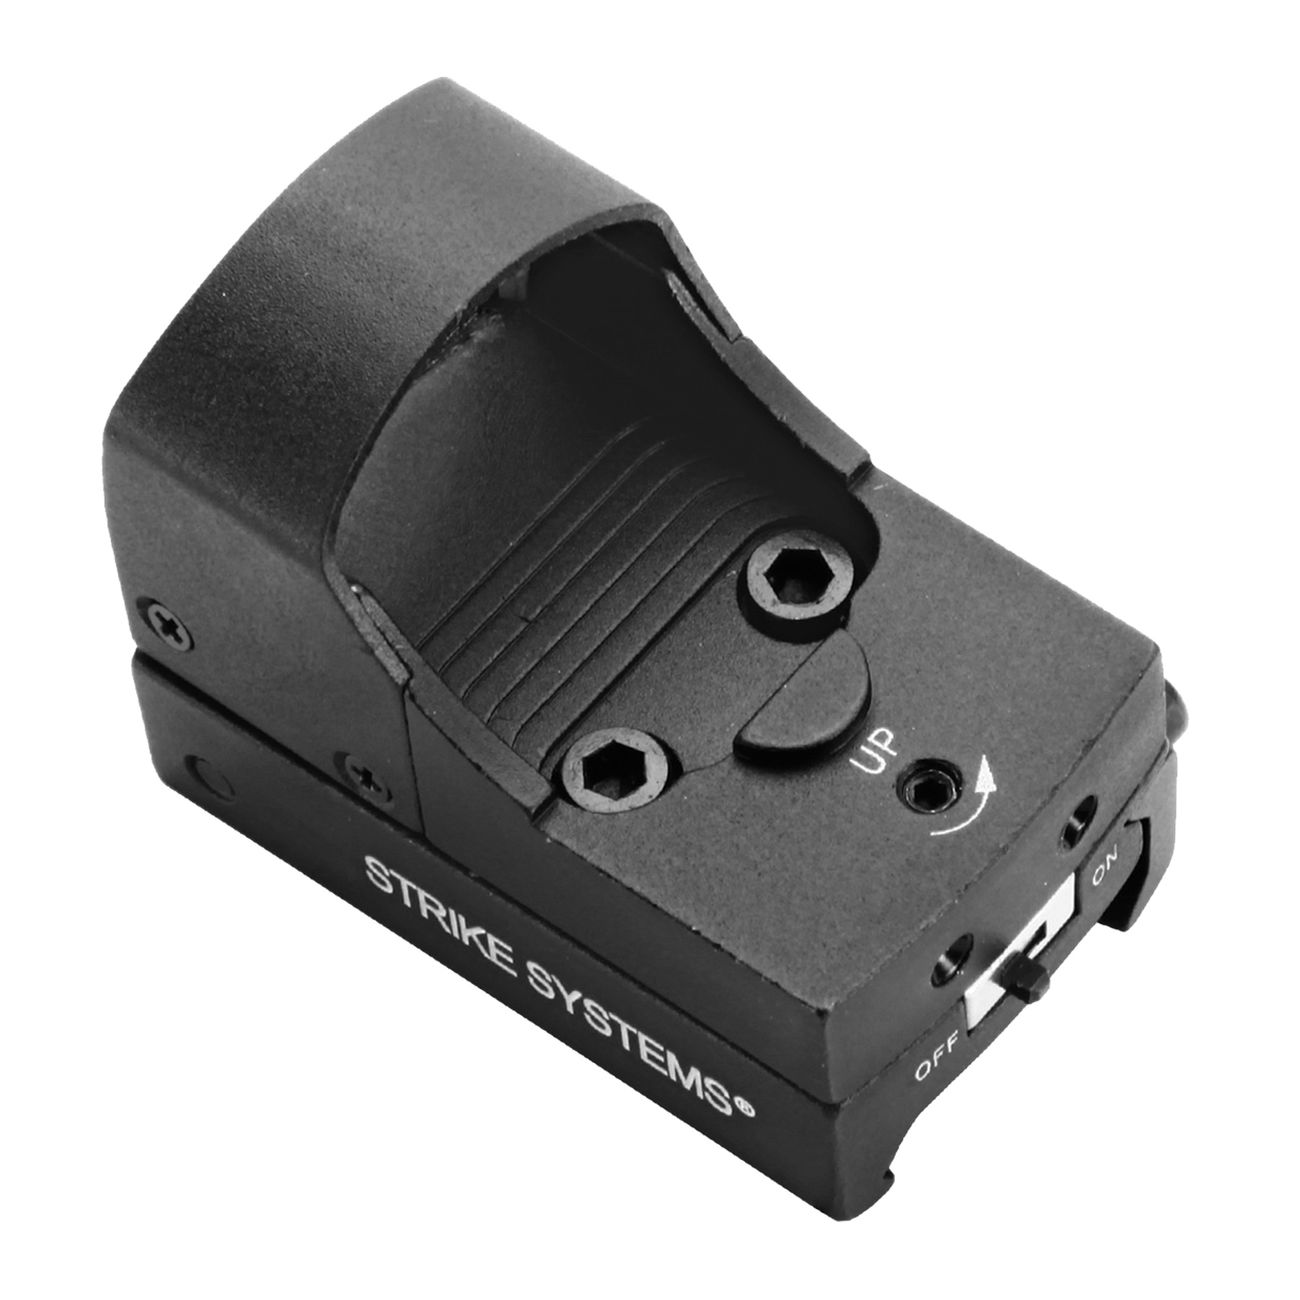 Strike Systems Micro Compact Red-Dot Leuchtpunktzielgert inkl. 21mm Mount schwarz Bild 2